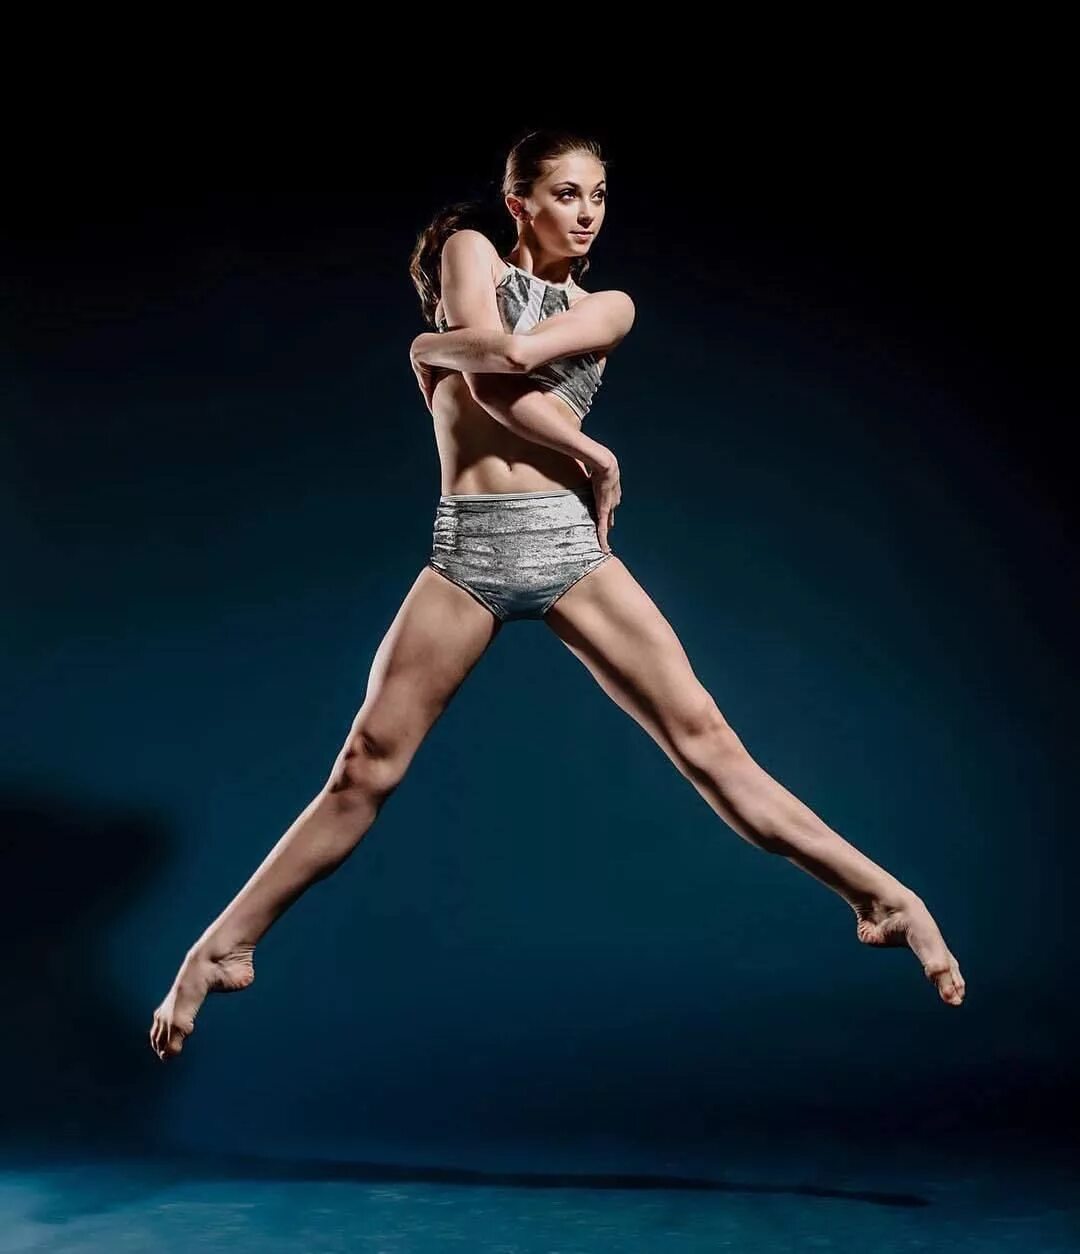 Tia Wenkman. Балерина в прыжке. Фигура "балерина". Балеhybyf d GHS;RT. Названный позировавший